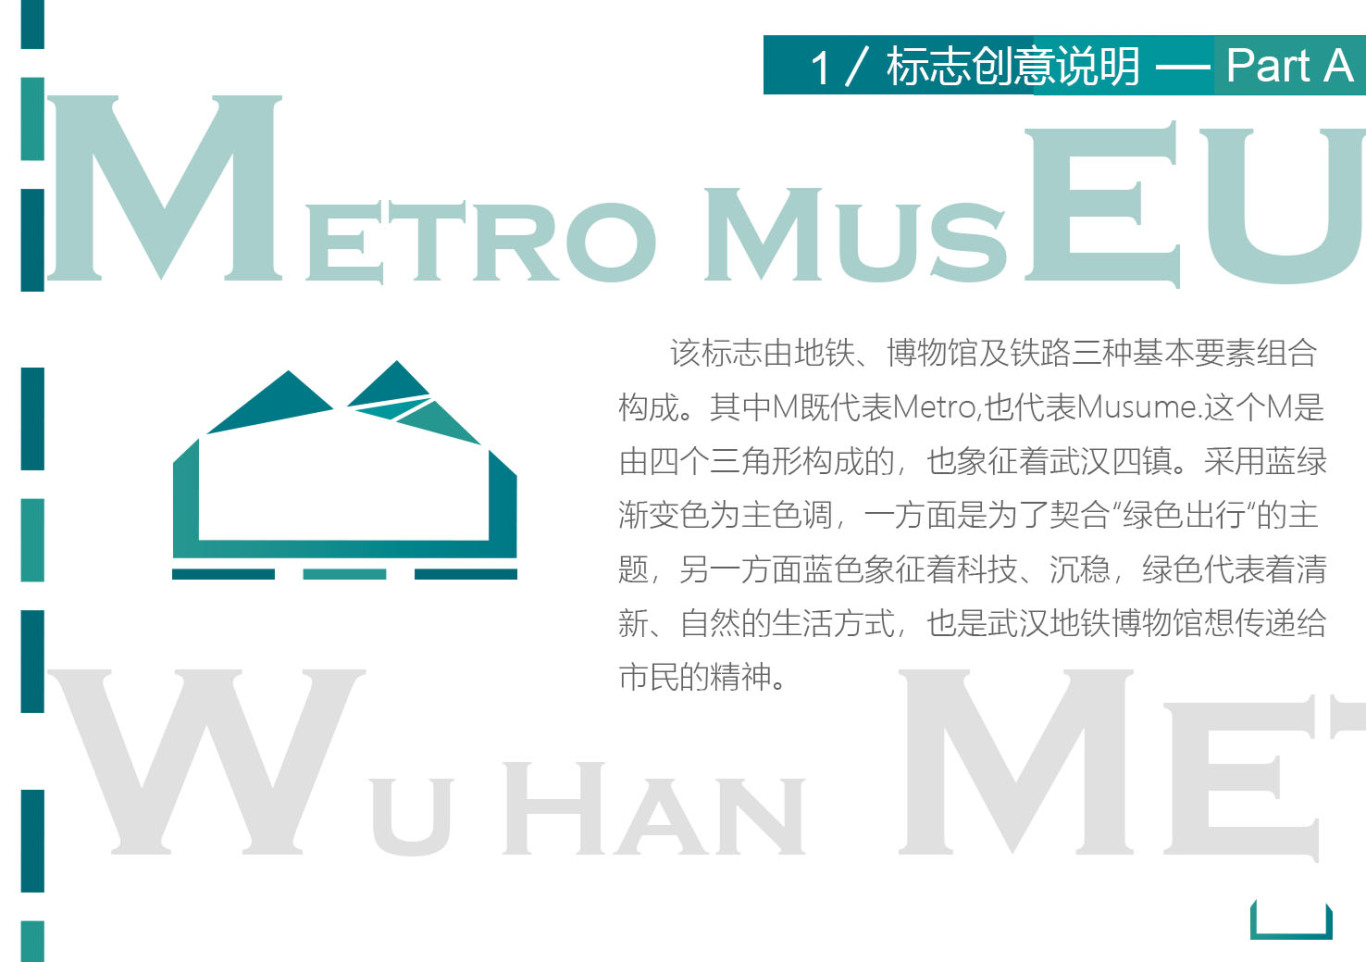 武漢地鐵博物館視覺識別設計圖0